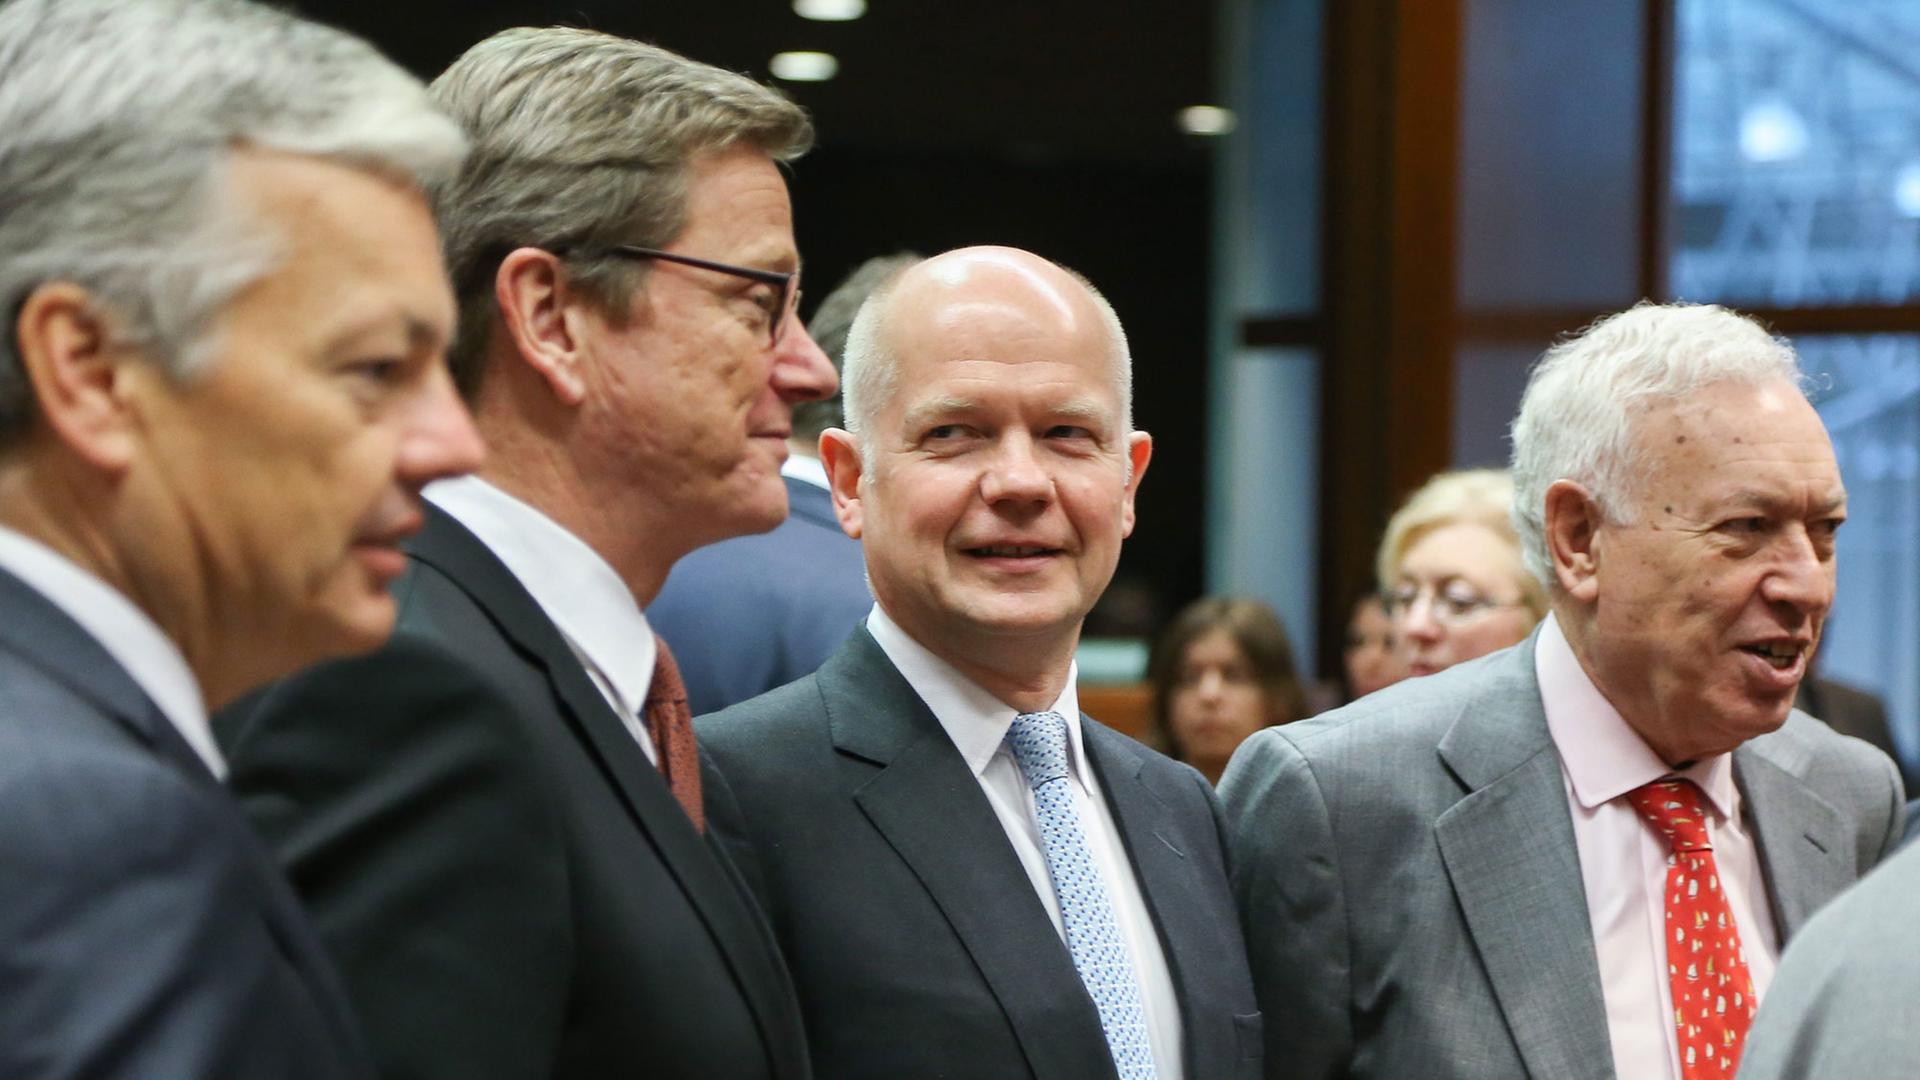 Vor ihrem Treffen in Brüssel stehen von links nach rechts der belgische Außenminister Didier Reynders, sein deutscher Kollege Guido Westerwelle, der Brite William Hague sowie Spaniens Außenminister Jose Manuel Garcia-Margallo zusammen.